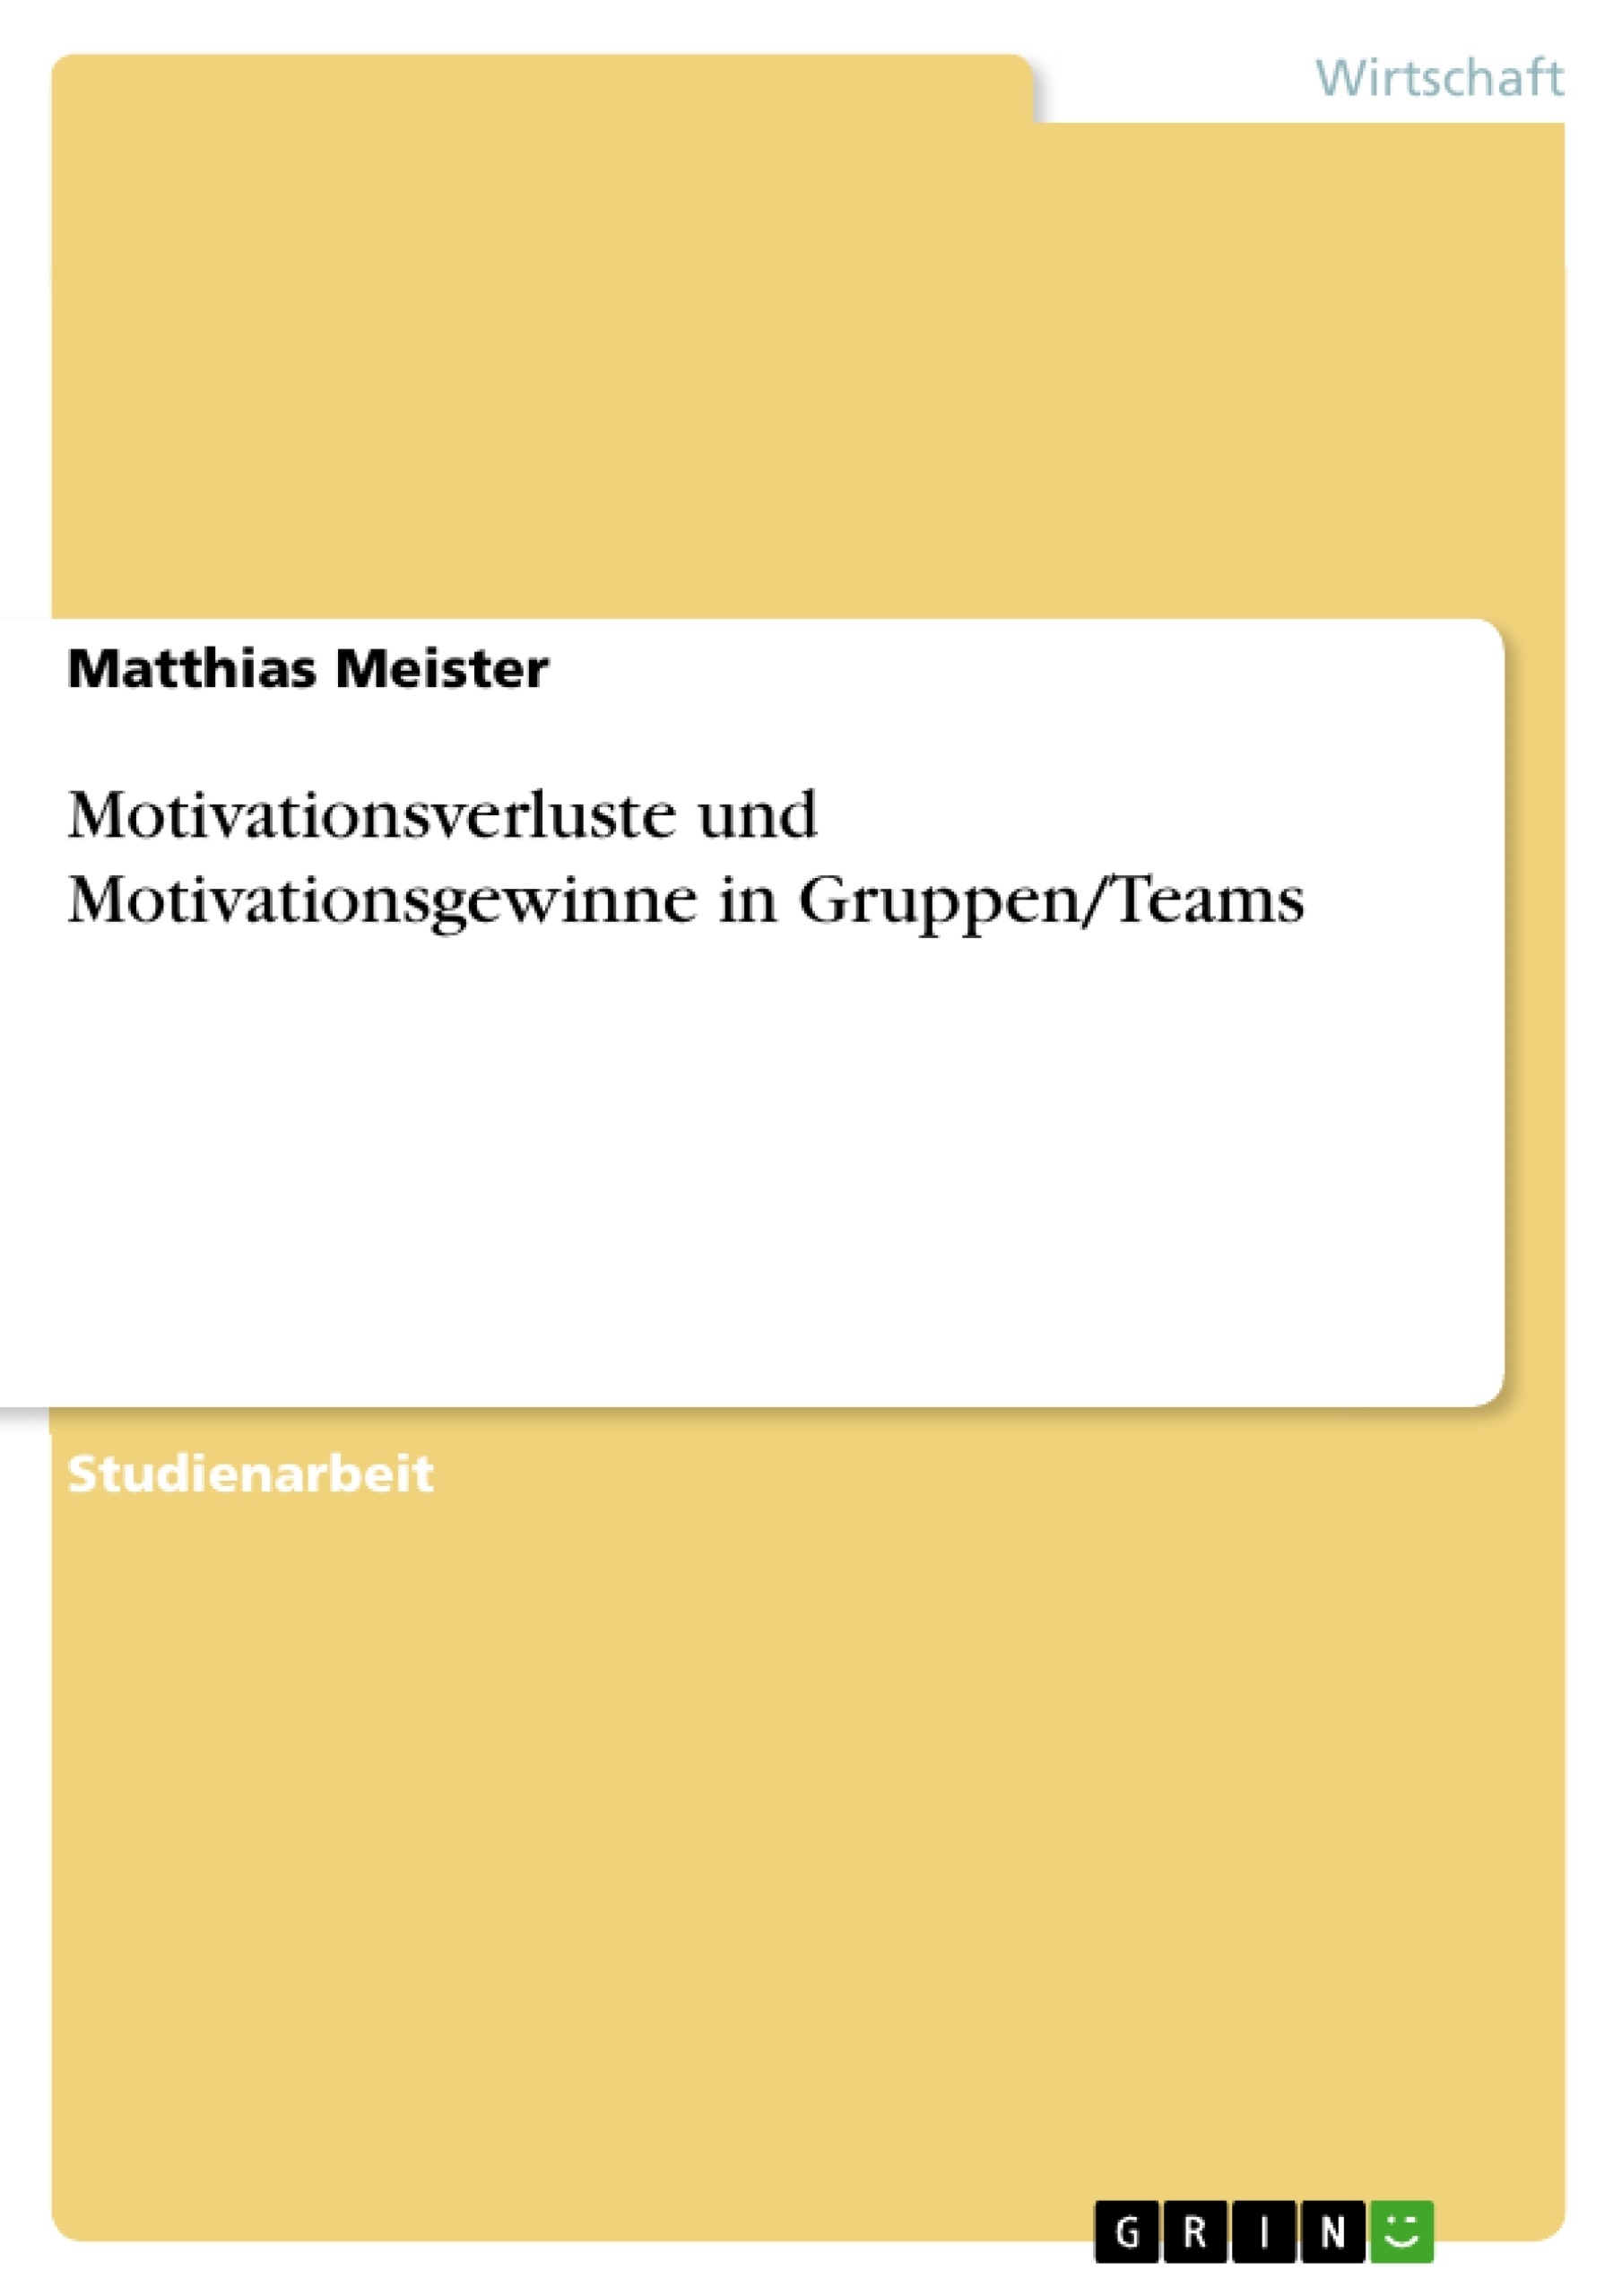 Title: Motivationsverluste und Motivationsgewinne in Gruppen/Teams